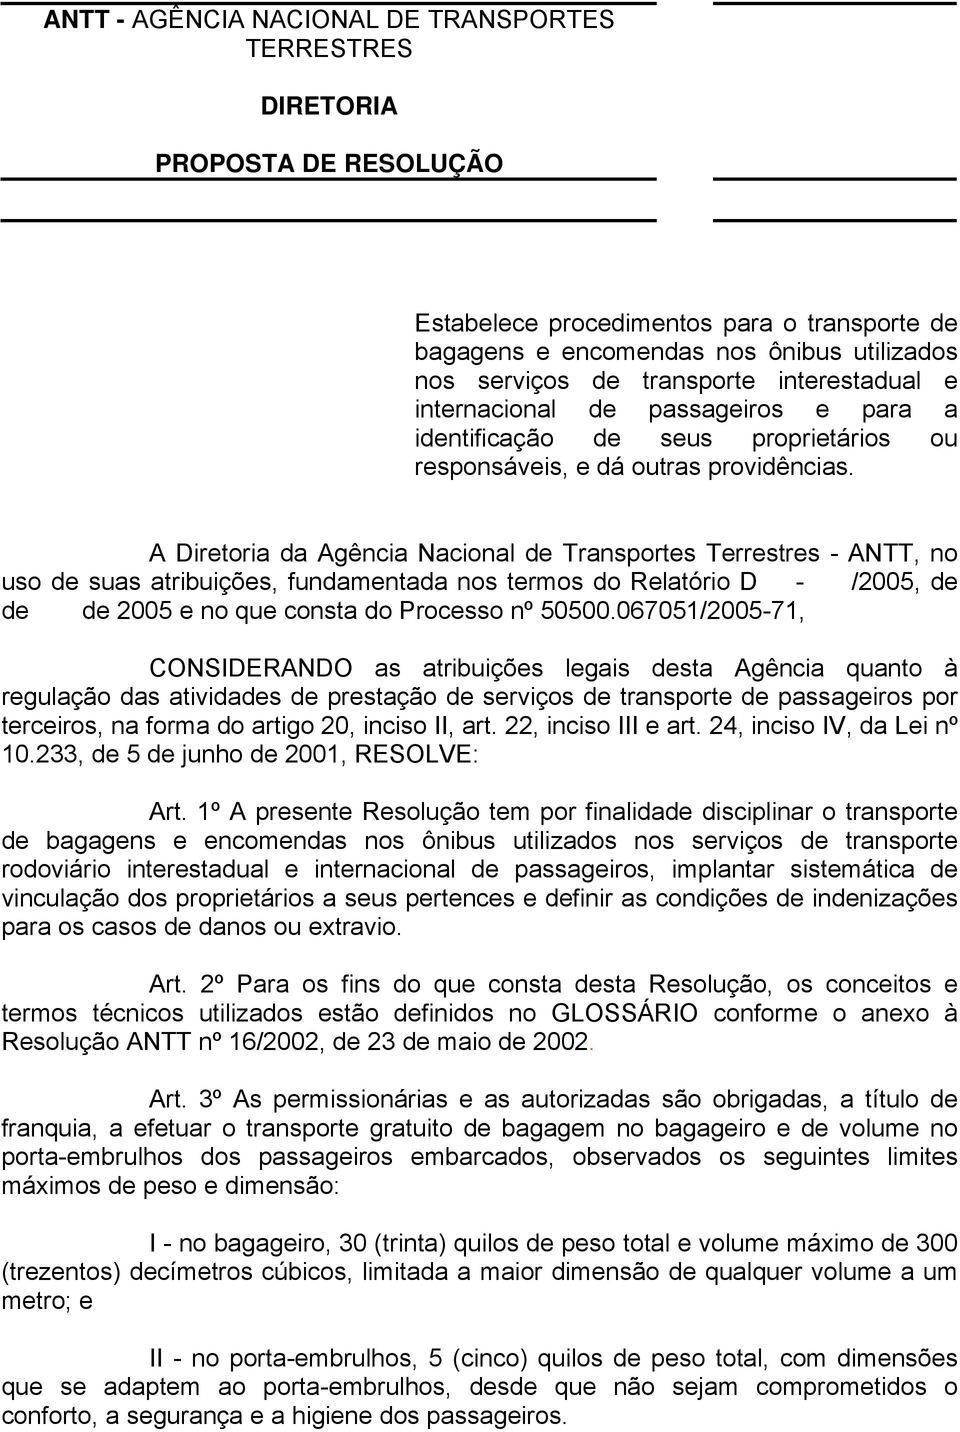 A Diretoria da Agência Nacional de Transportes Terrestres - ANTT, no uso de suas atribuições, fundamentada nos termos do Relatório D - /2005, de de de 2005 e no que consta do Processo nº 50500.